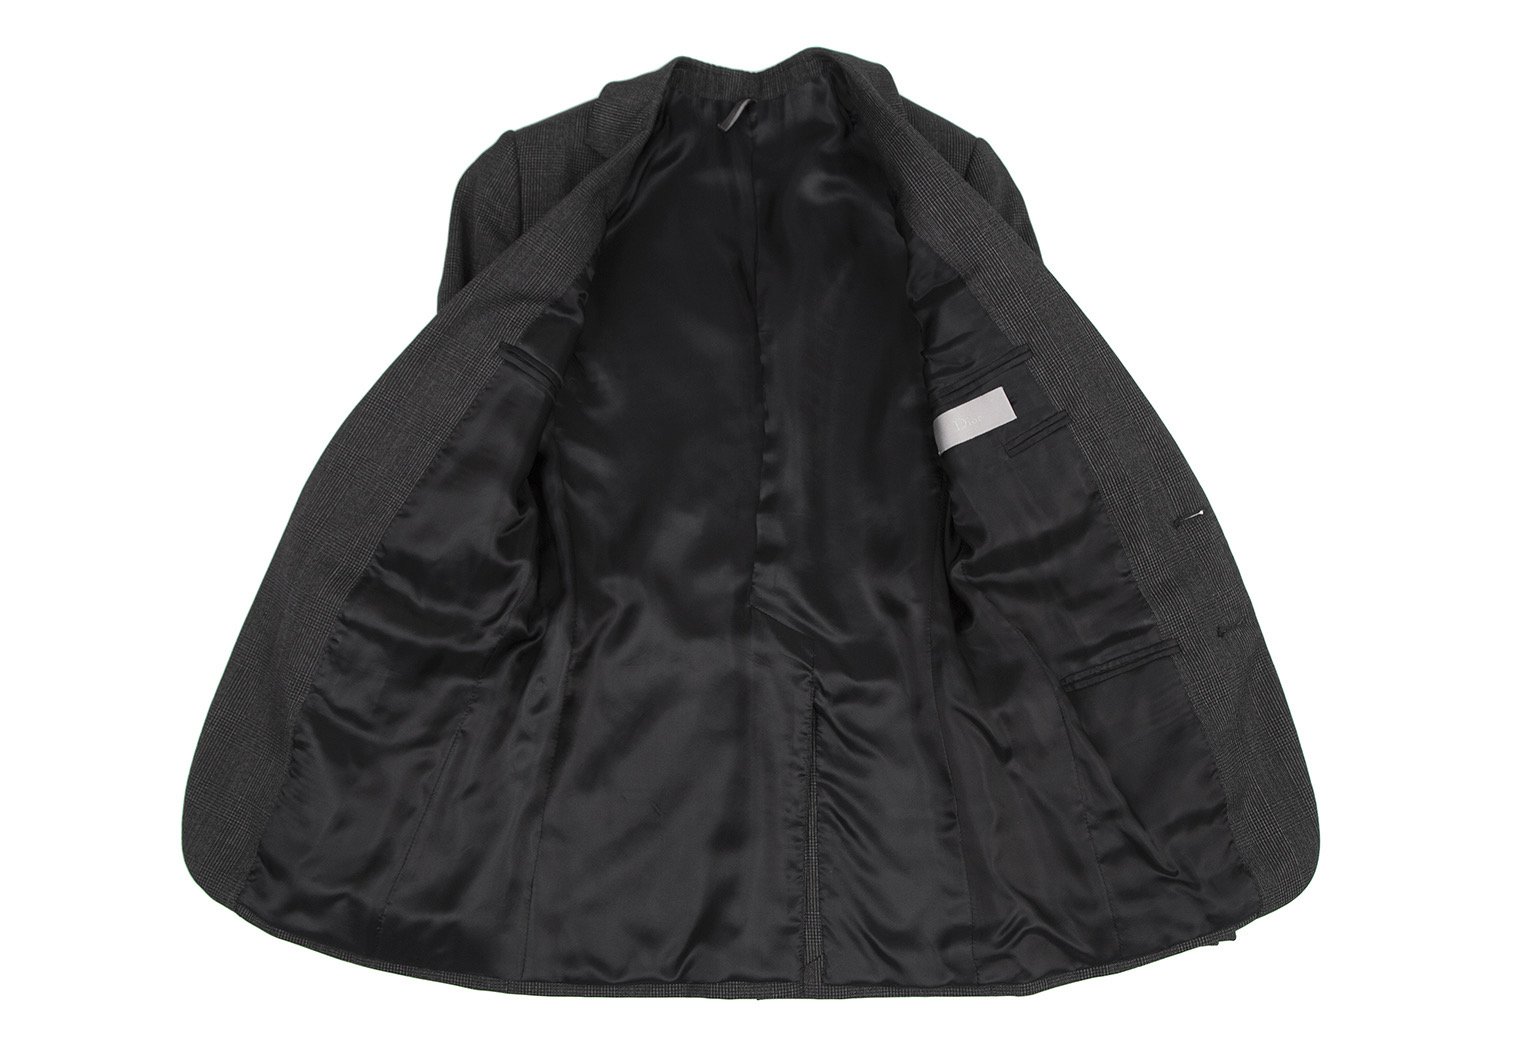 テーラードジャケット ジャケット 肩パット ダブル スーツ Dior ディオール